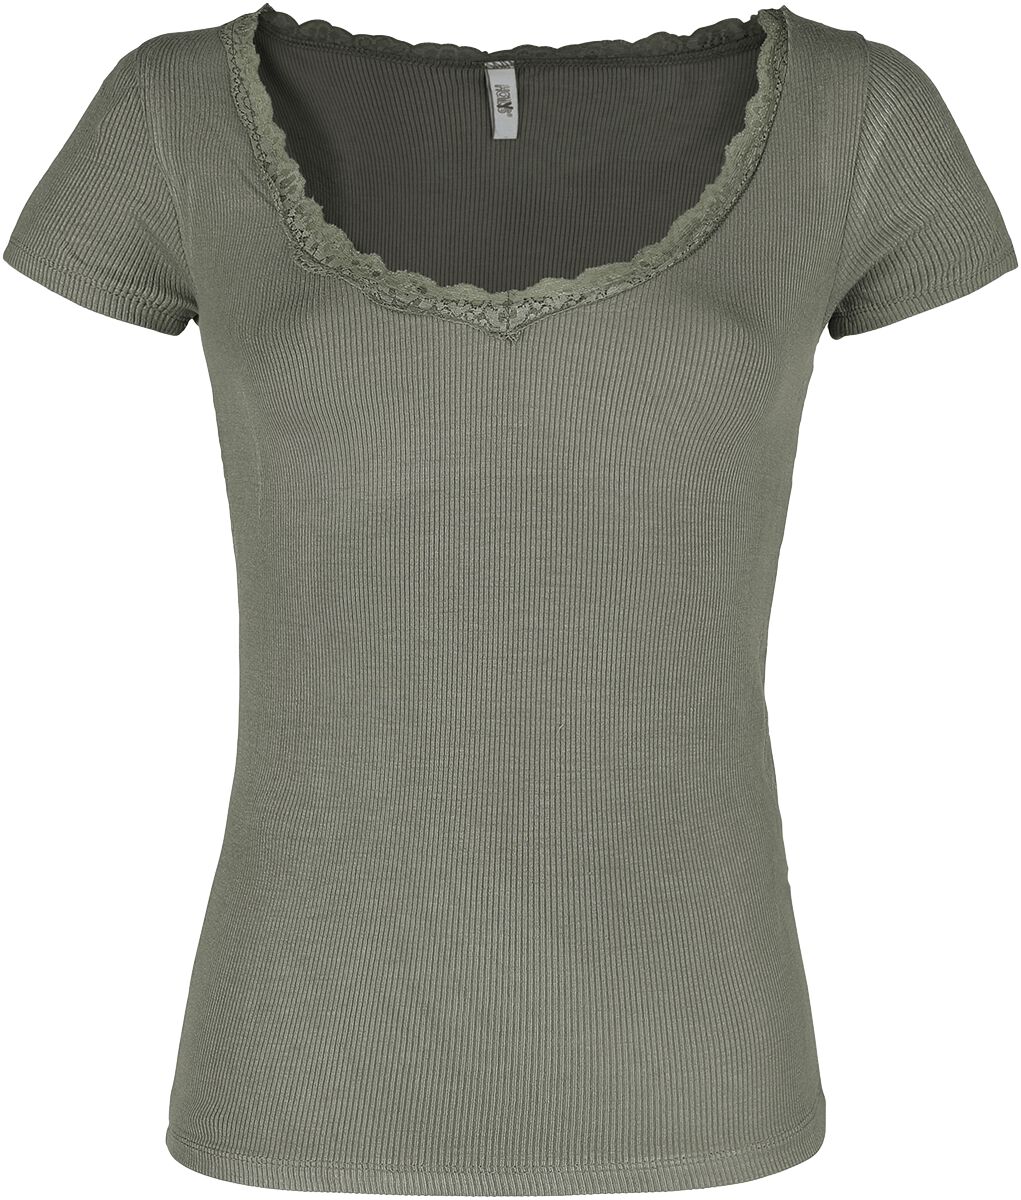 Hailys T-Shirt - Mariella - XS bis XL - für Damen - Größe S - khaki